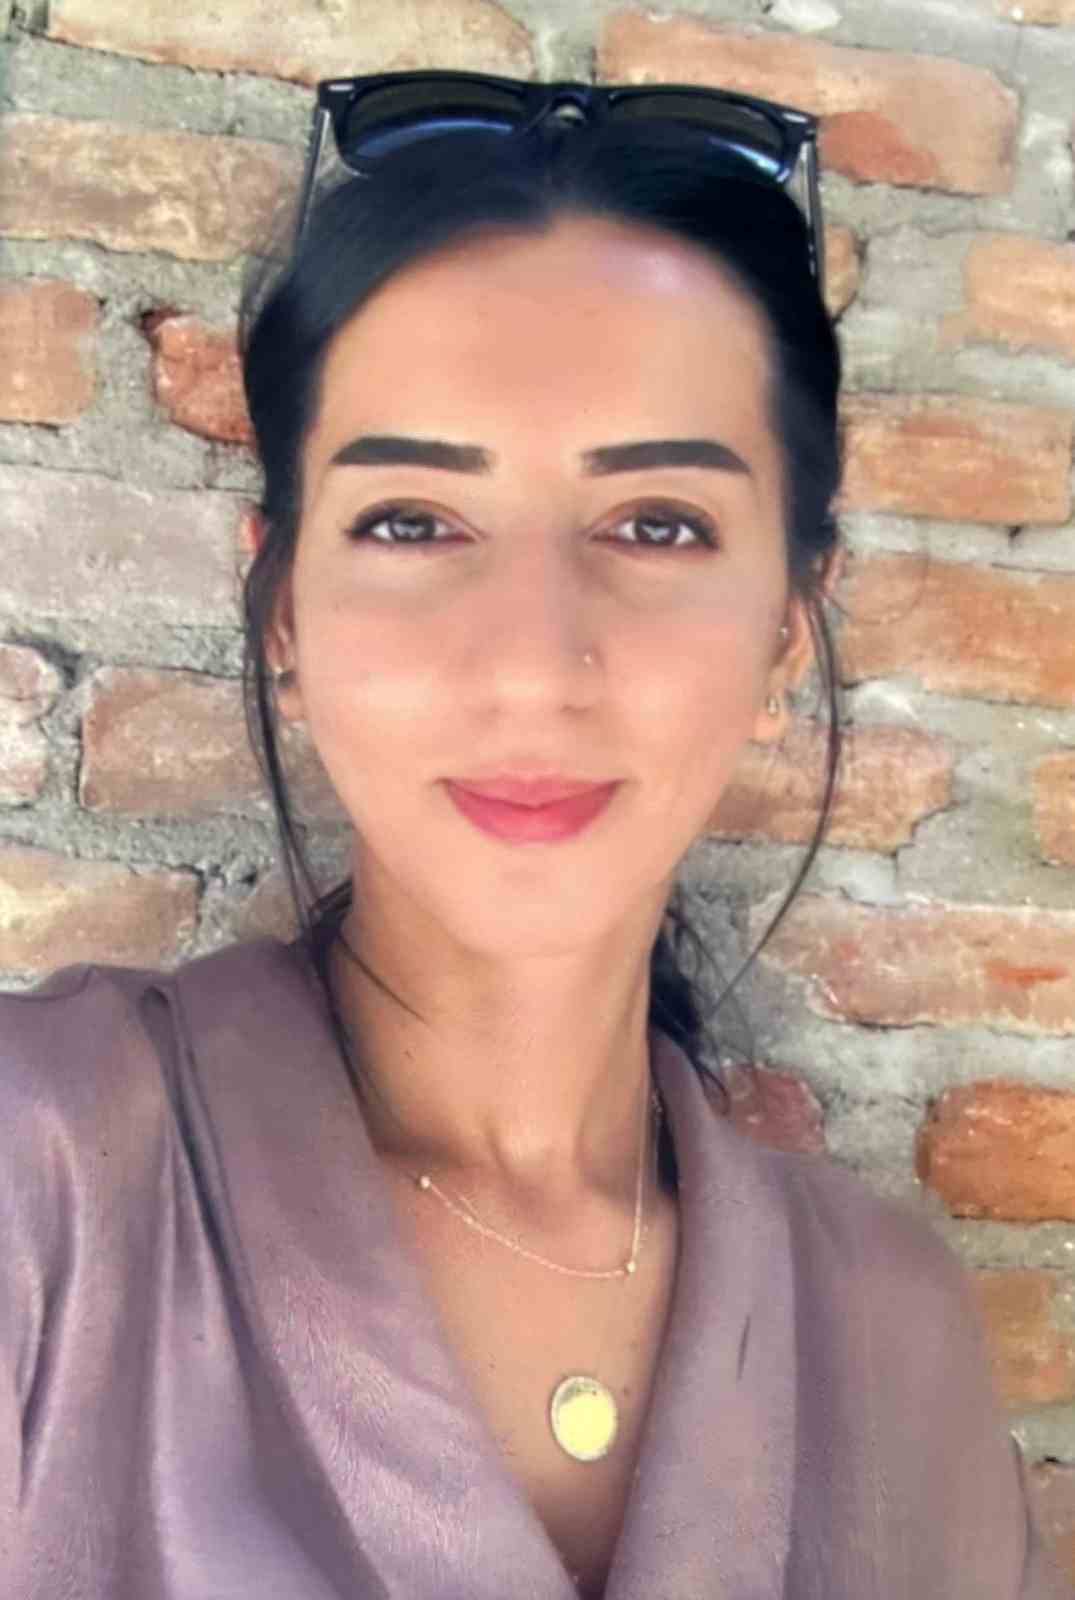 Pencereden düşerek ölen kadının sevgilisi hakkında verilen beraat kararına Aile ve Sosyal Hizmetler Bakanlığı itiraz etti